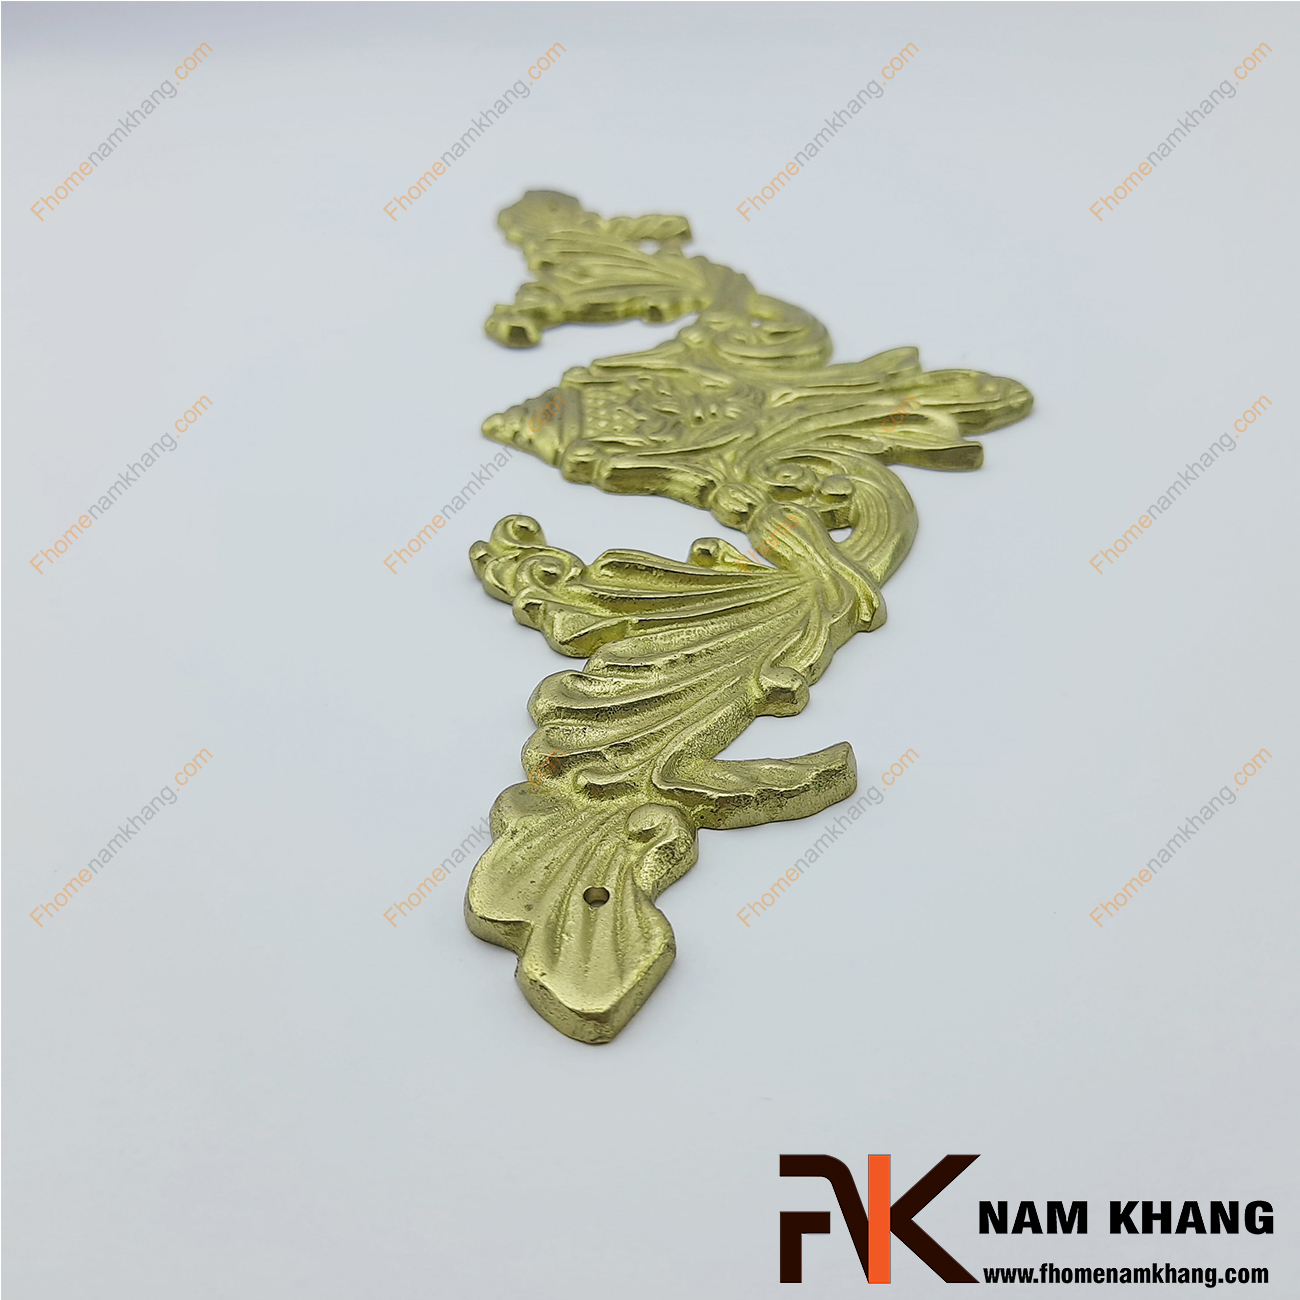 Ốp hoa văn trang trí màu đồng vàng NKD104 được sản xuất từ đồng cao cấp mang độ bền rất cao. Dòng sản phẩm này được xử lý kỹ thuật cao, đường nét trau chuốt tỉ mỉ, mang giá trị thẩm mĩ cao.